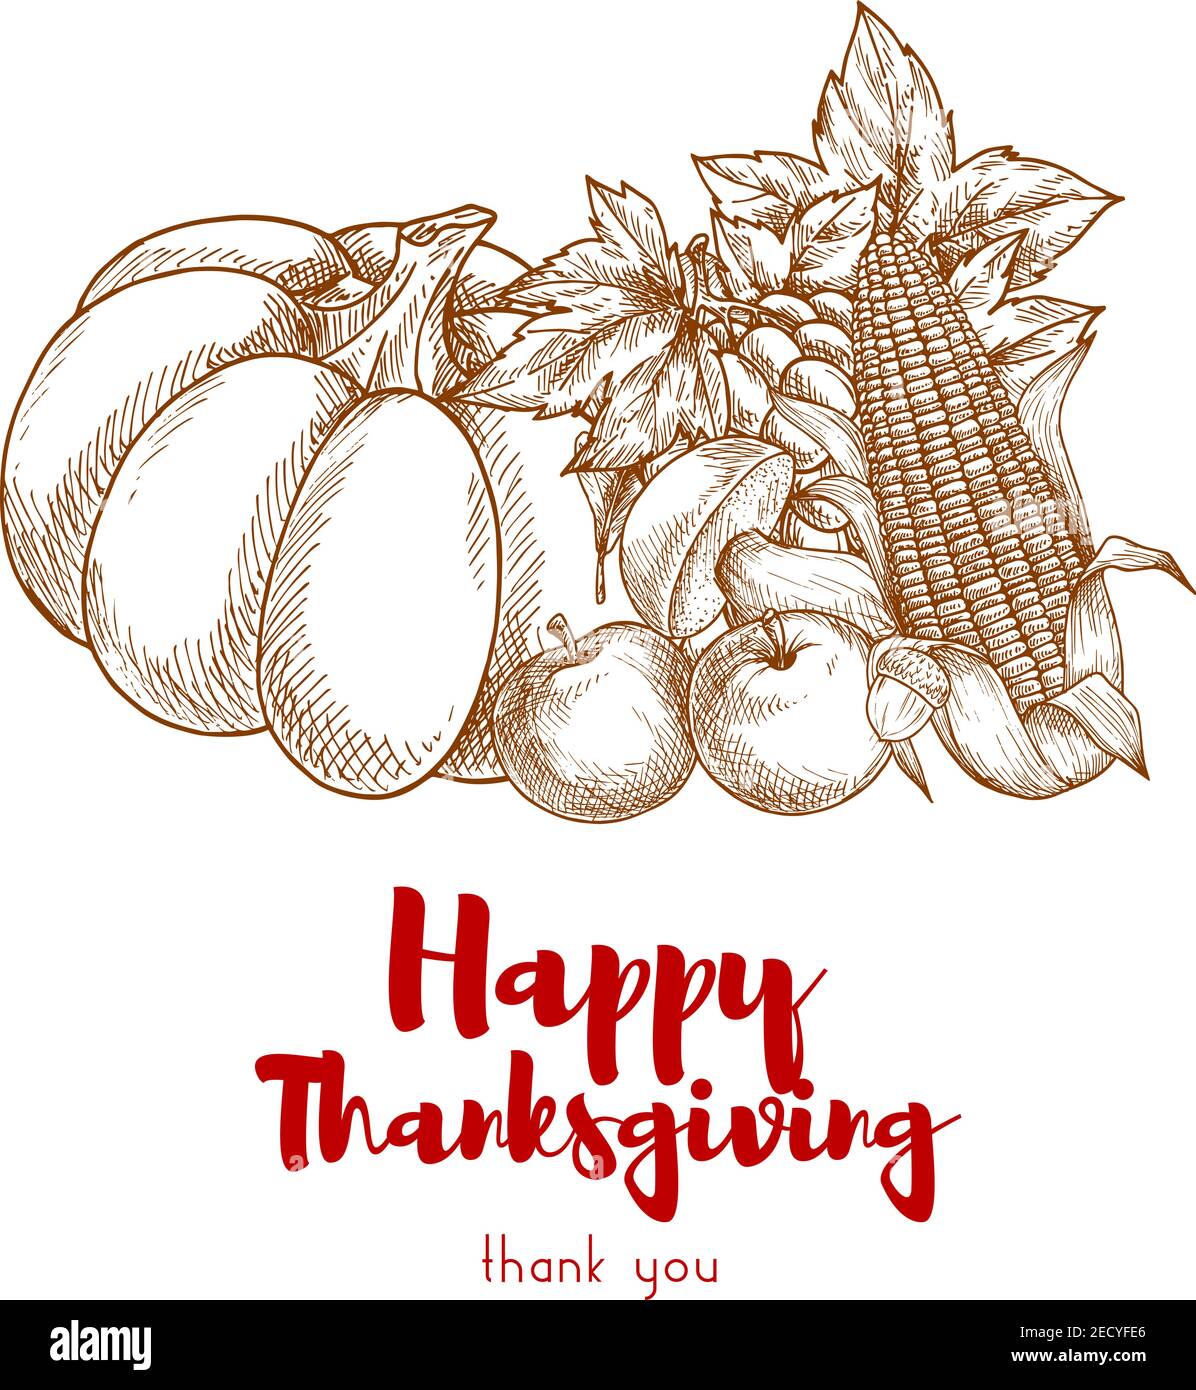 Happy Thanksgiving Gruß mit Herbsternte. Dekorationselemente der Danksagung Ernte Gemüse. Skizzierter Kürbis, Äpfel, Mais, Traubenbrötchen Stock Vektor